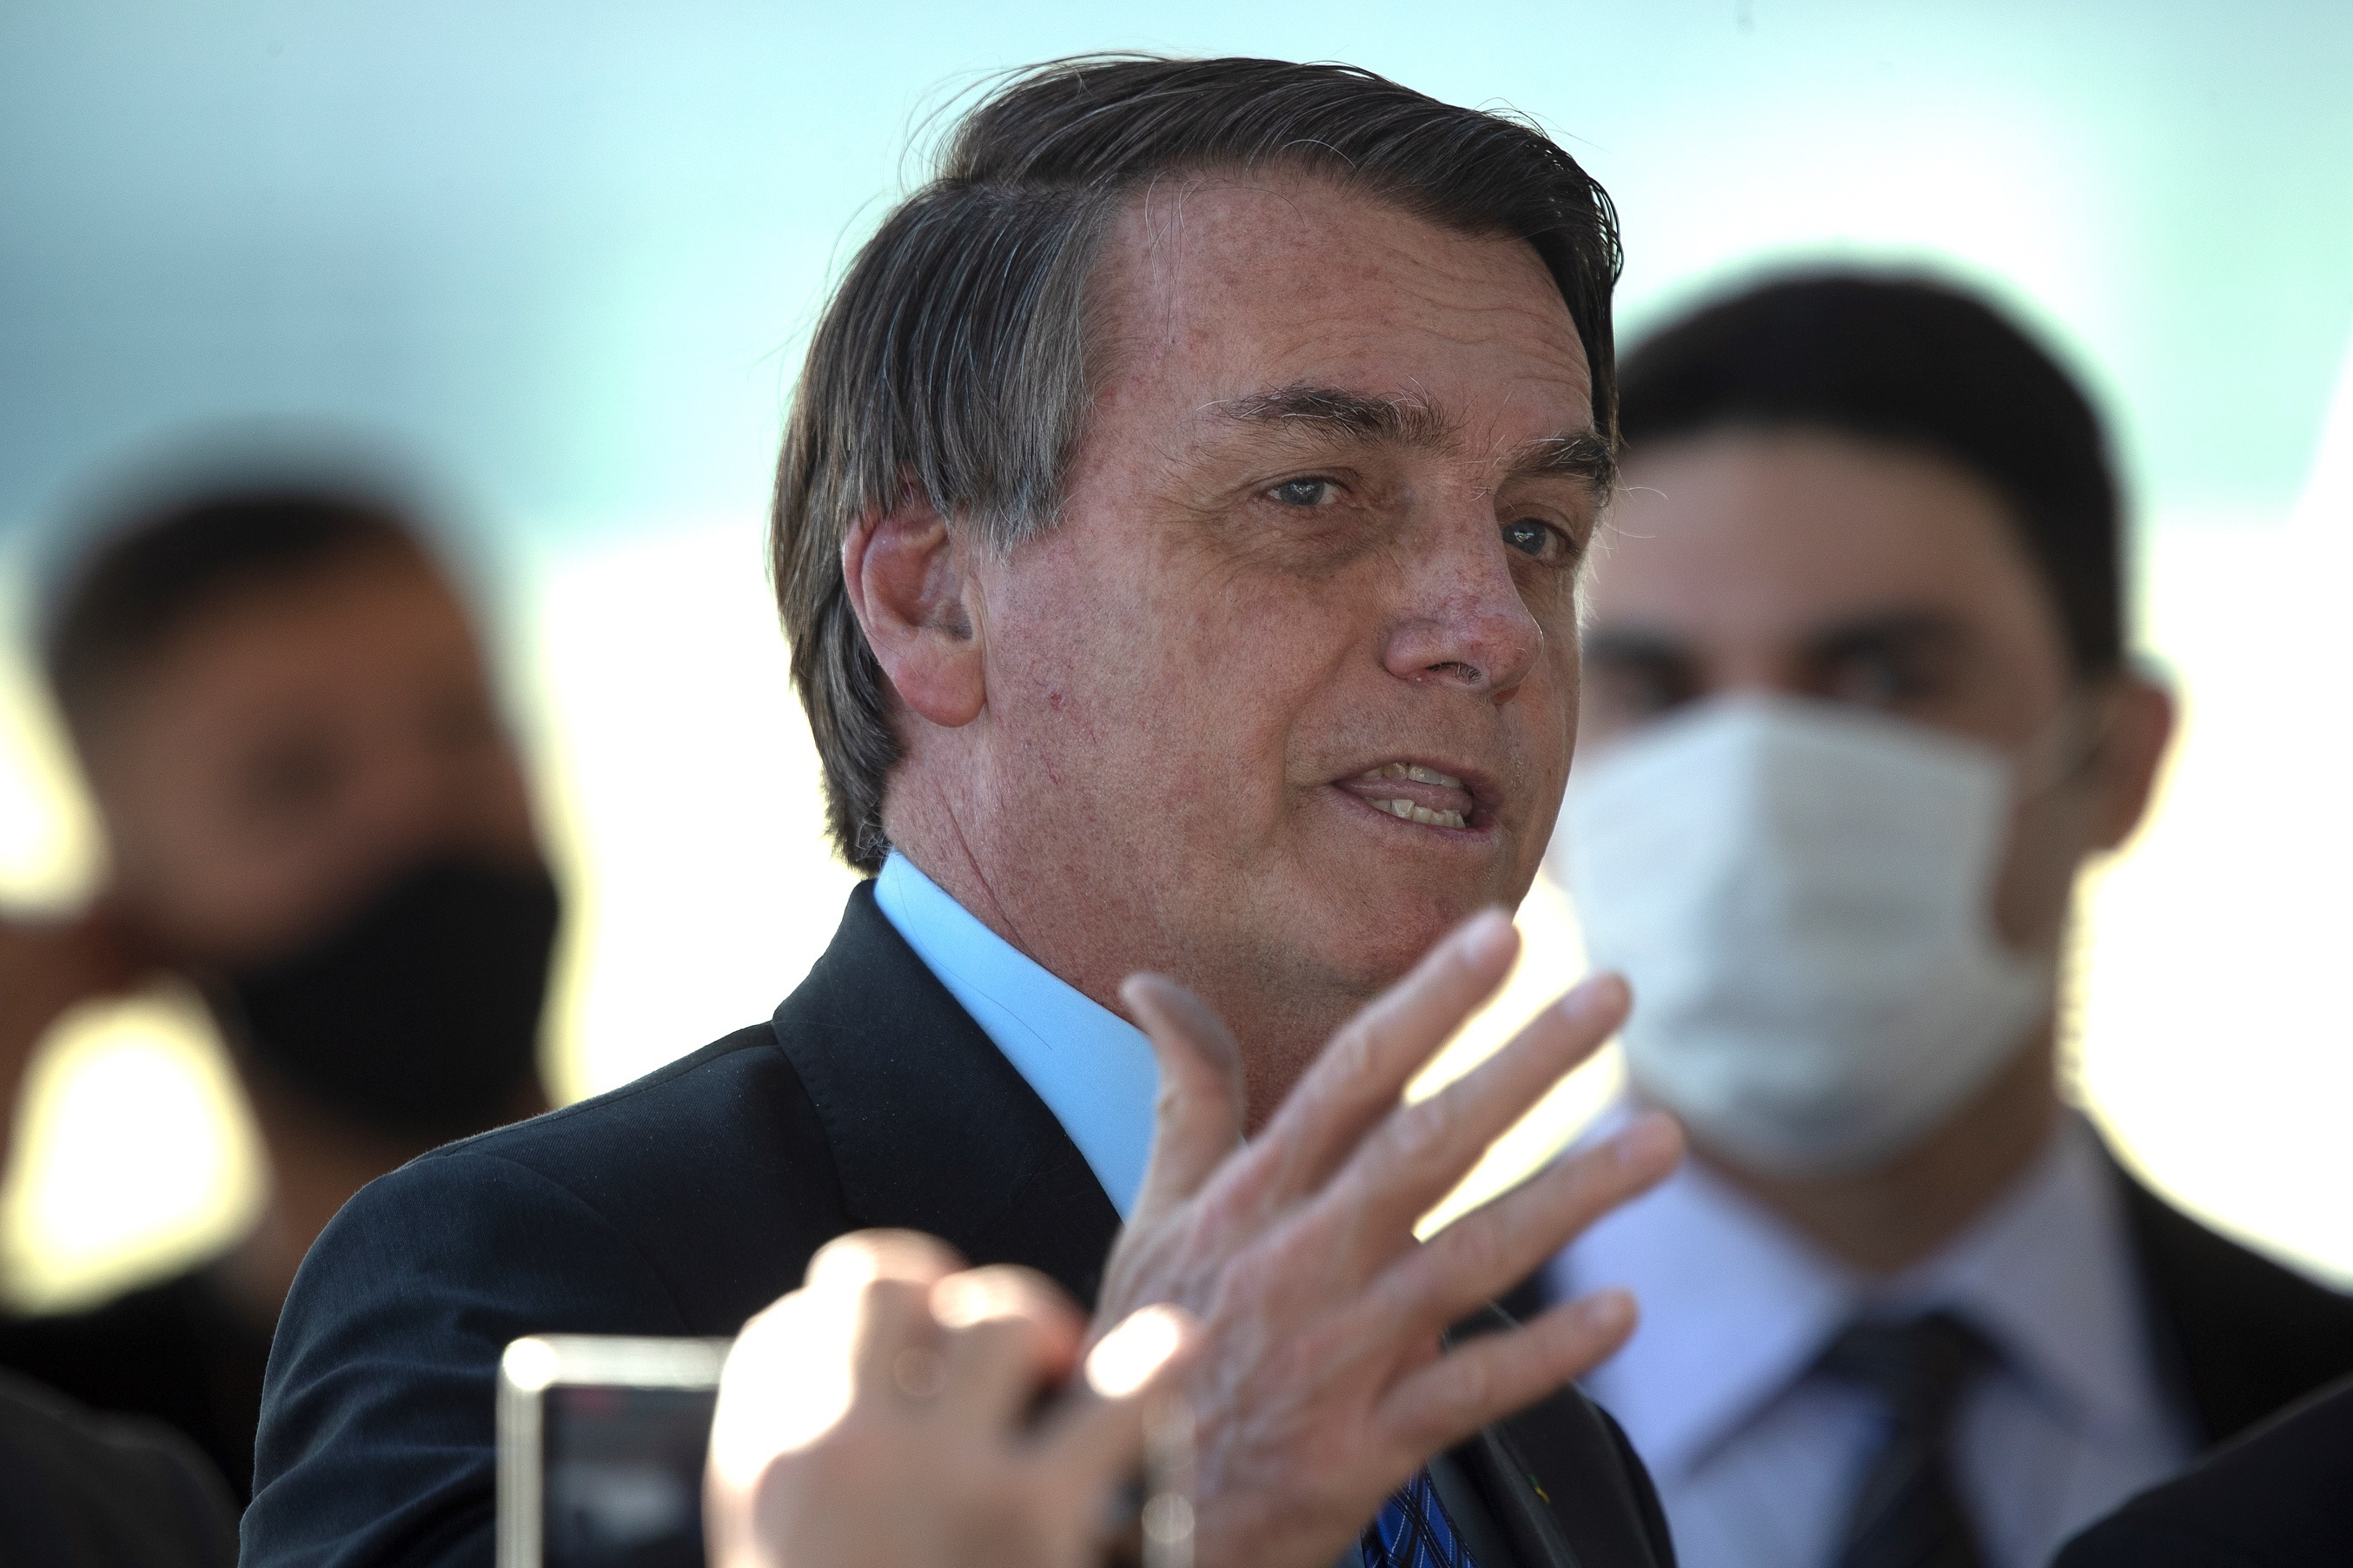 Bolsonaro felicitará “en su momento” a quien sea electo en EEUU